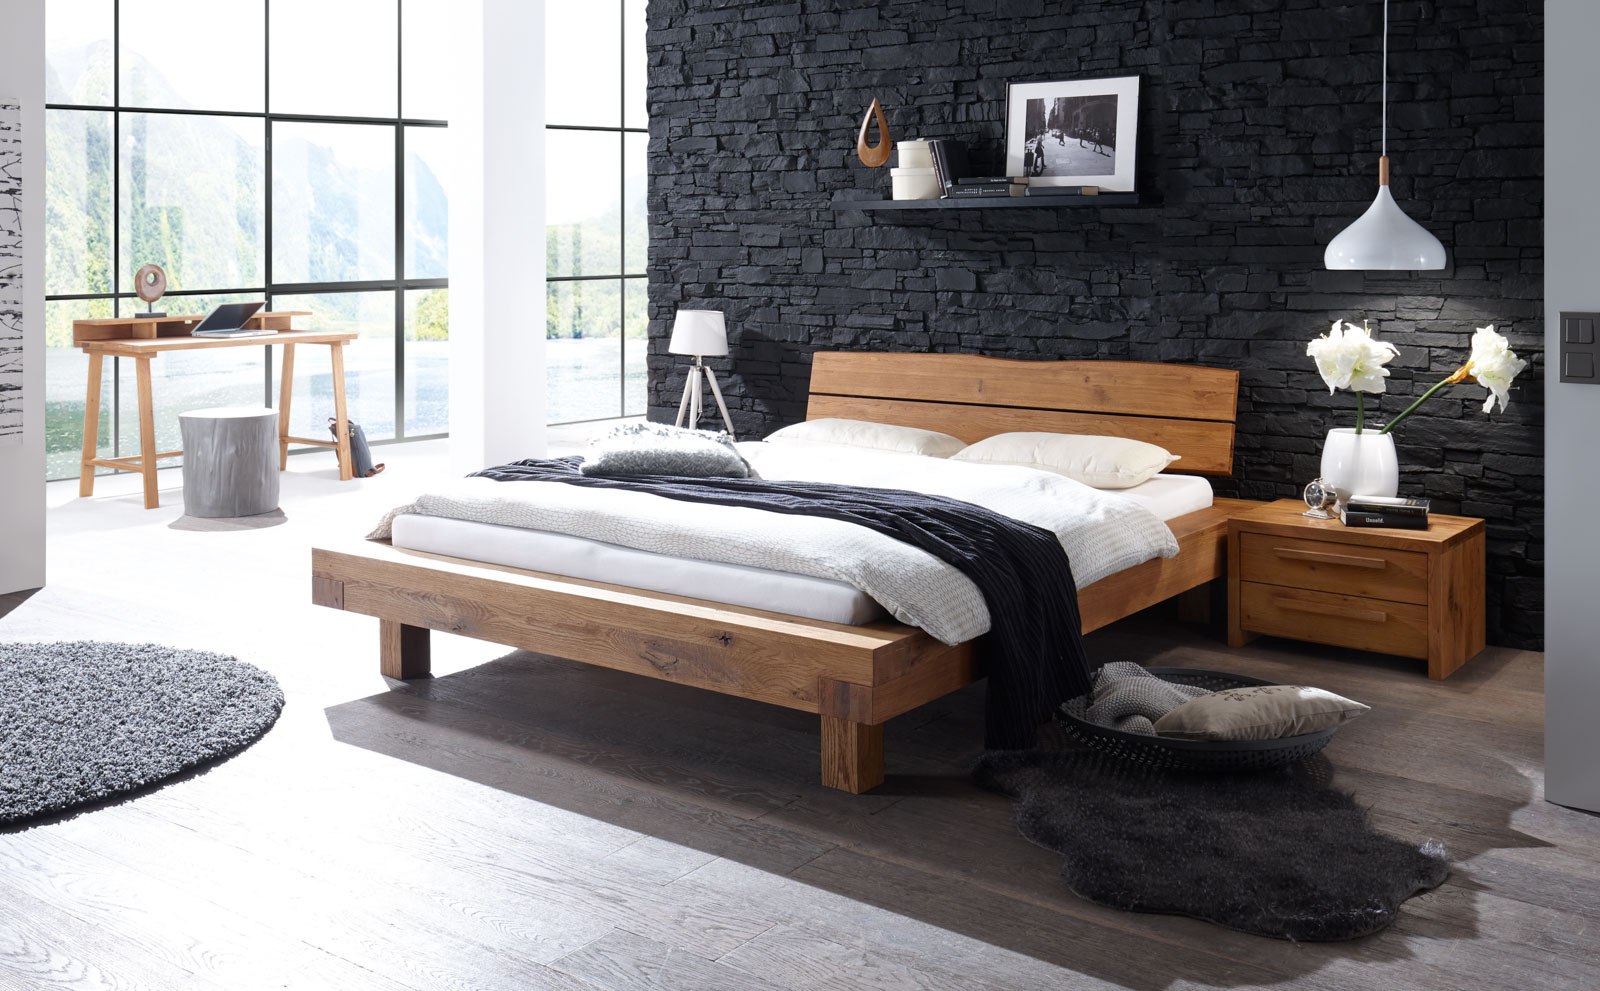 Ein Bett der Oak Wild-Serie von Hasena steht in einem hellen Raum vor einer schwarzen Steinwand